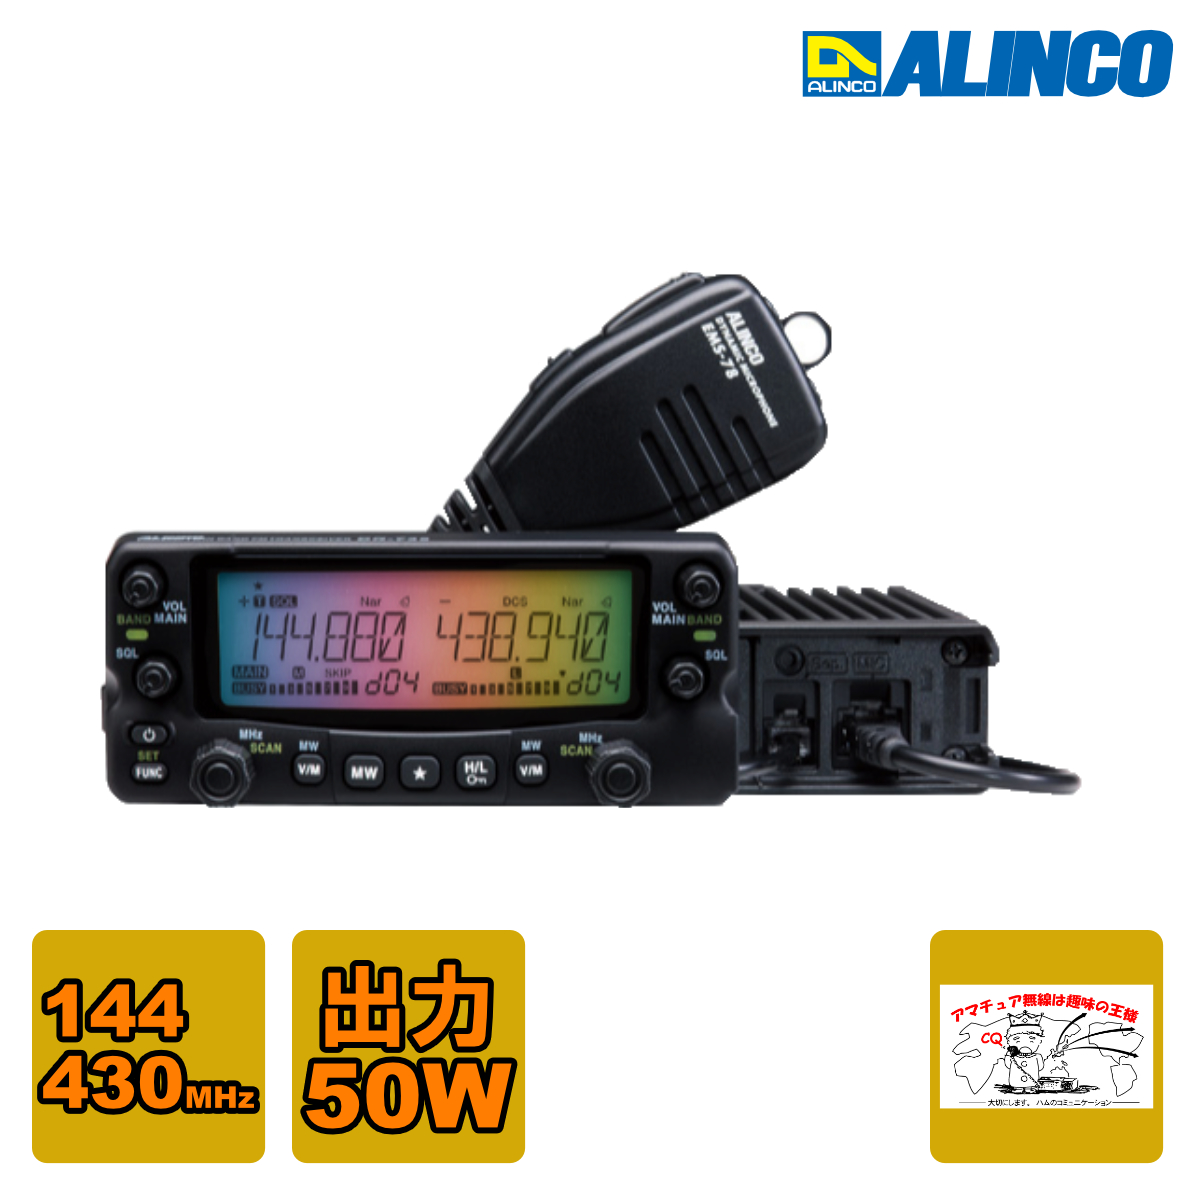 ALINCO ALINCO ツインバンド 144/430MHz FMモービルトランシーバー DR-735H アマチュア無線用品の商品画像